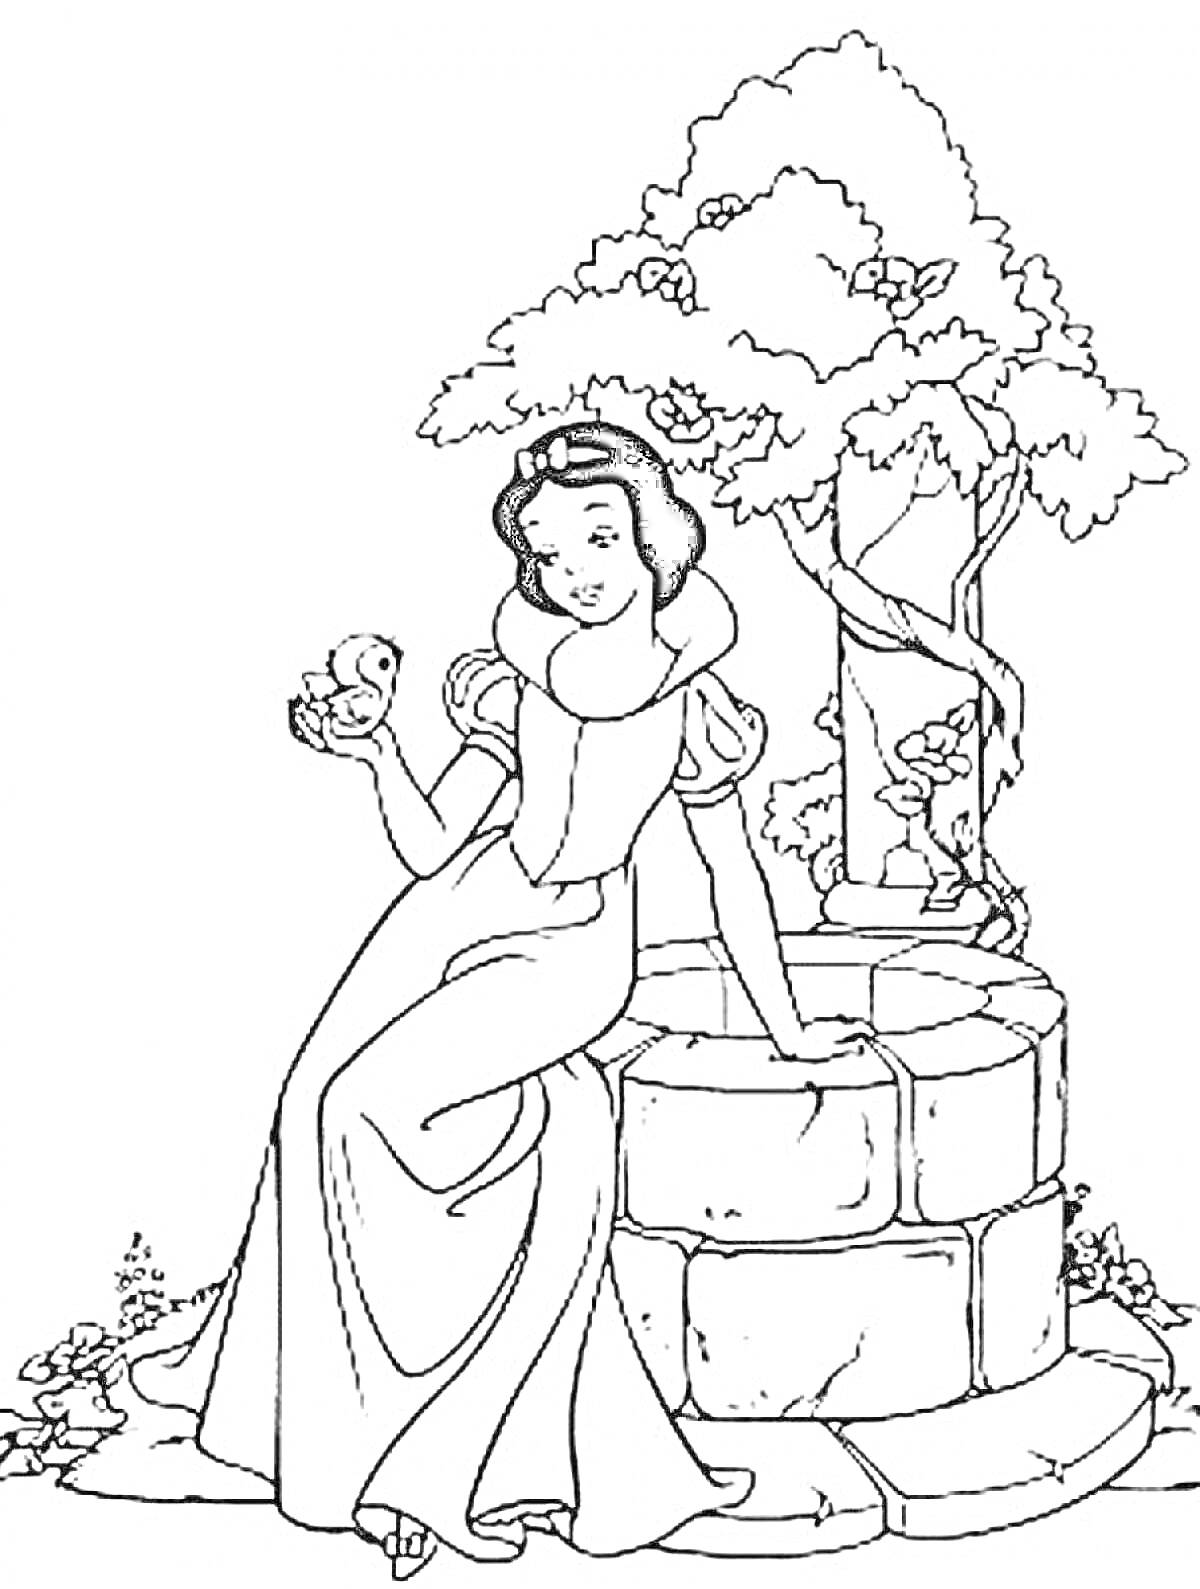 Белоснежка сидит на колодце с птицей в руке, рядом дерево и цветы